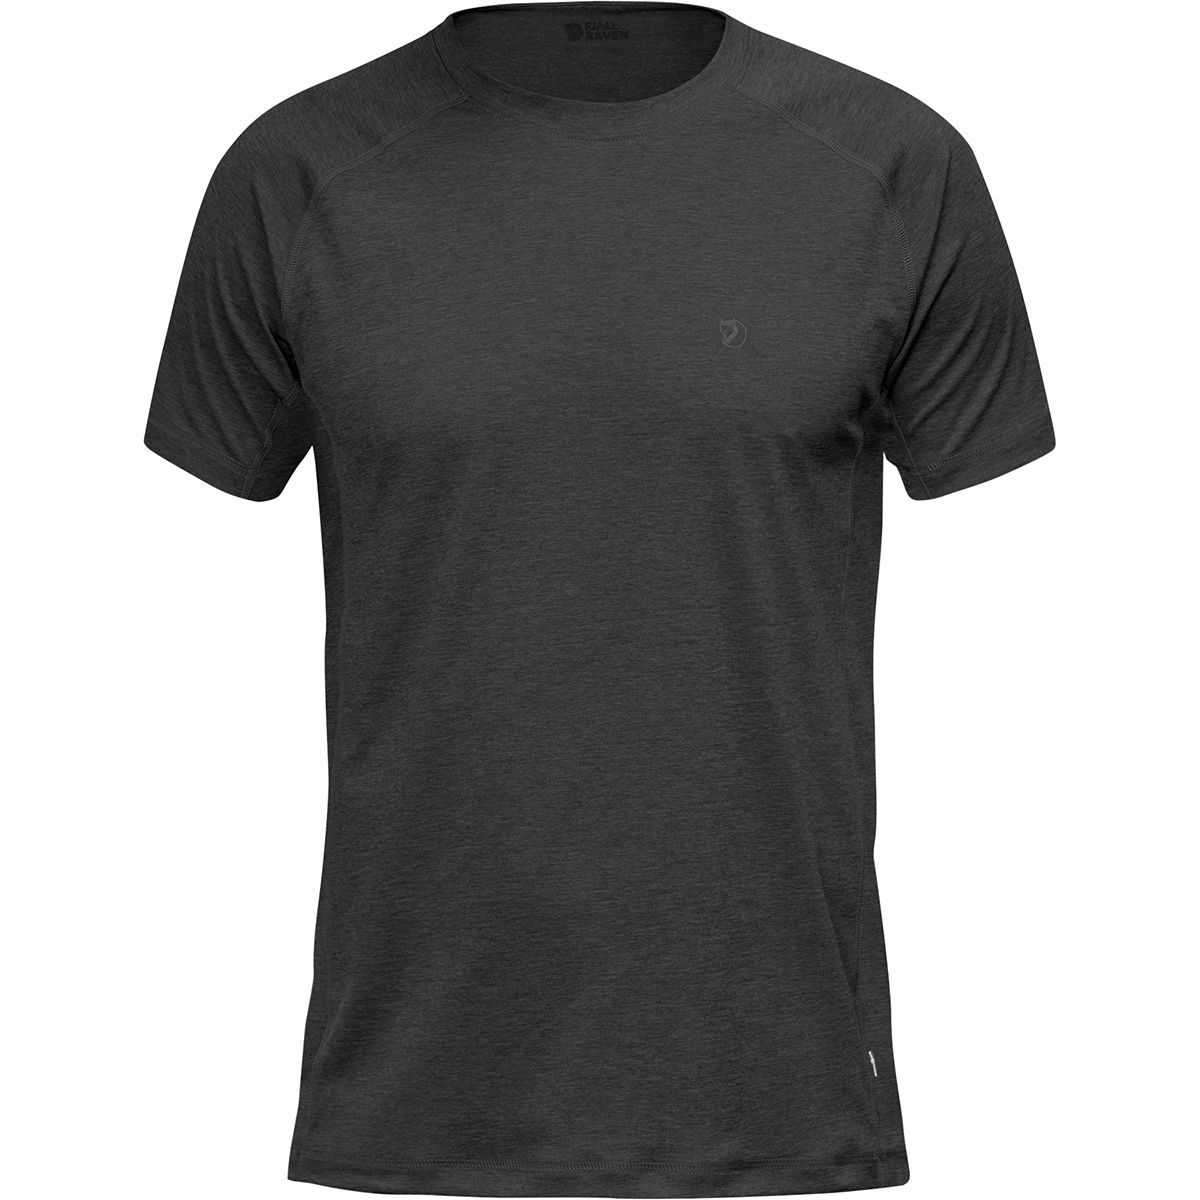 Fjallraven Abisko Trail T-Shirt